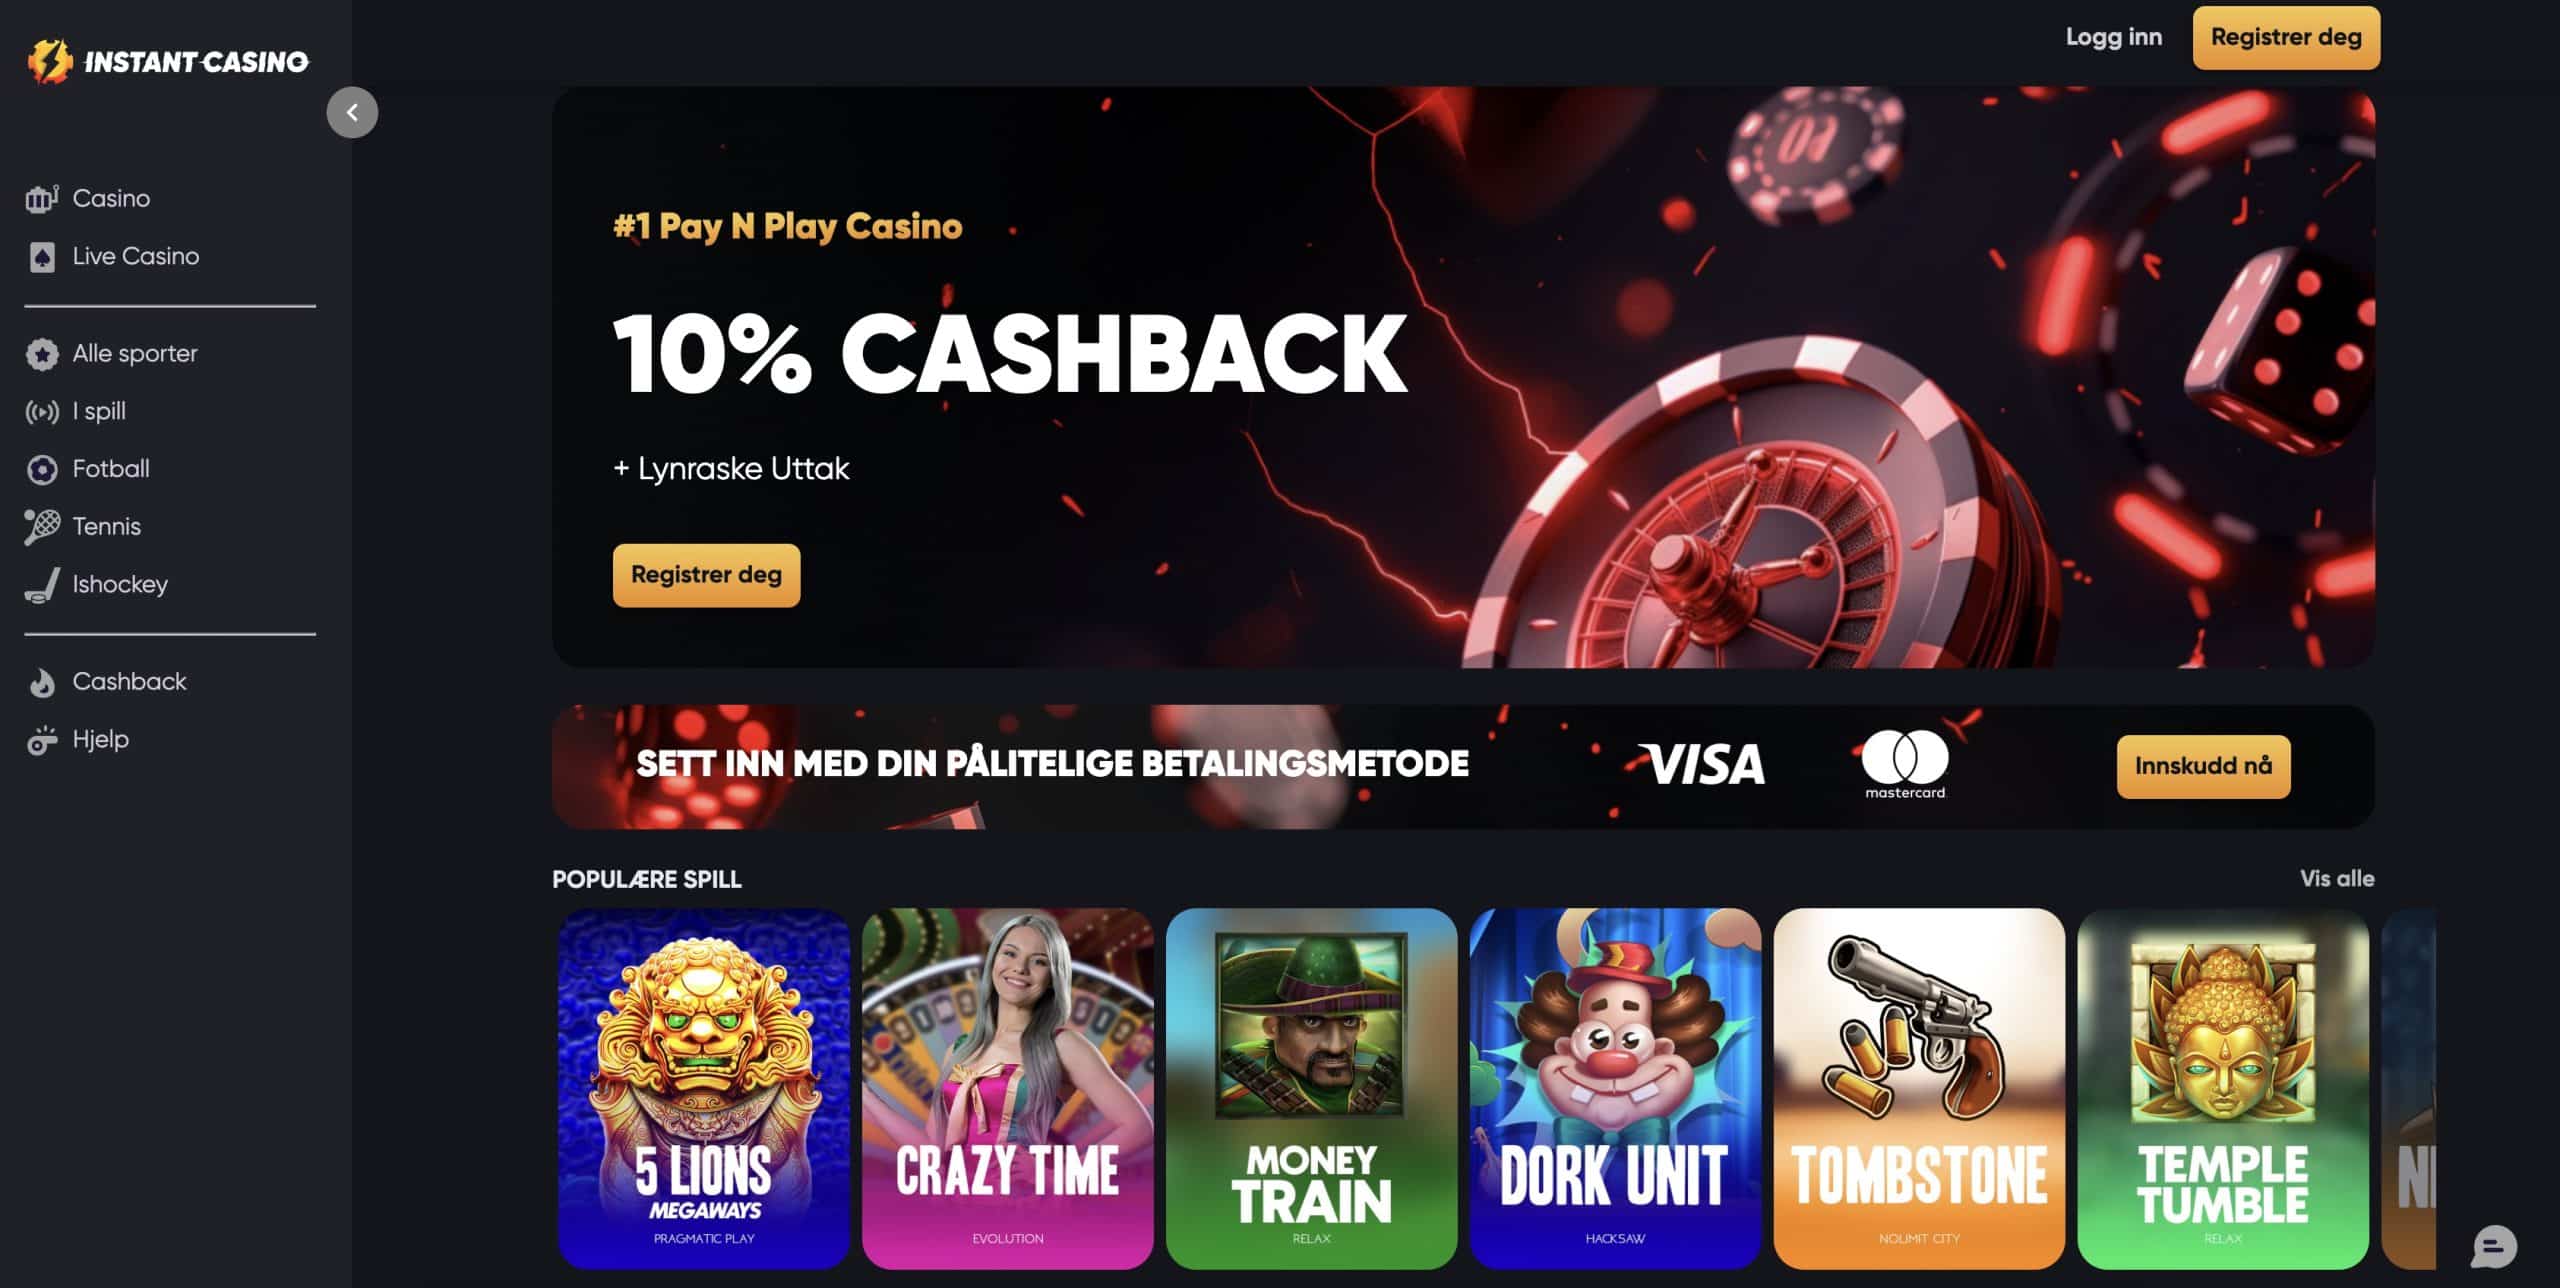 Instant casino anmeldelse nettside med 10 % cashback velkomstbonus og registreringsknapp